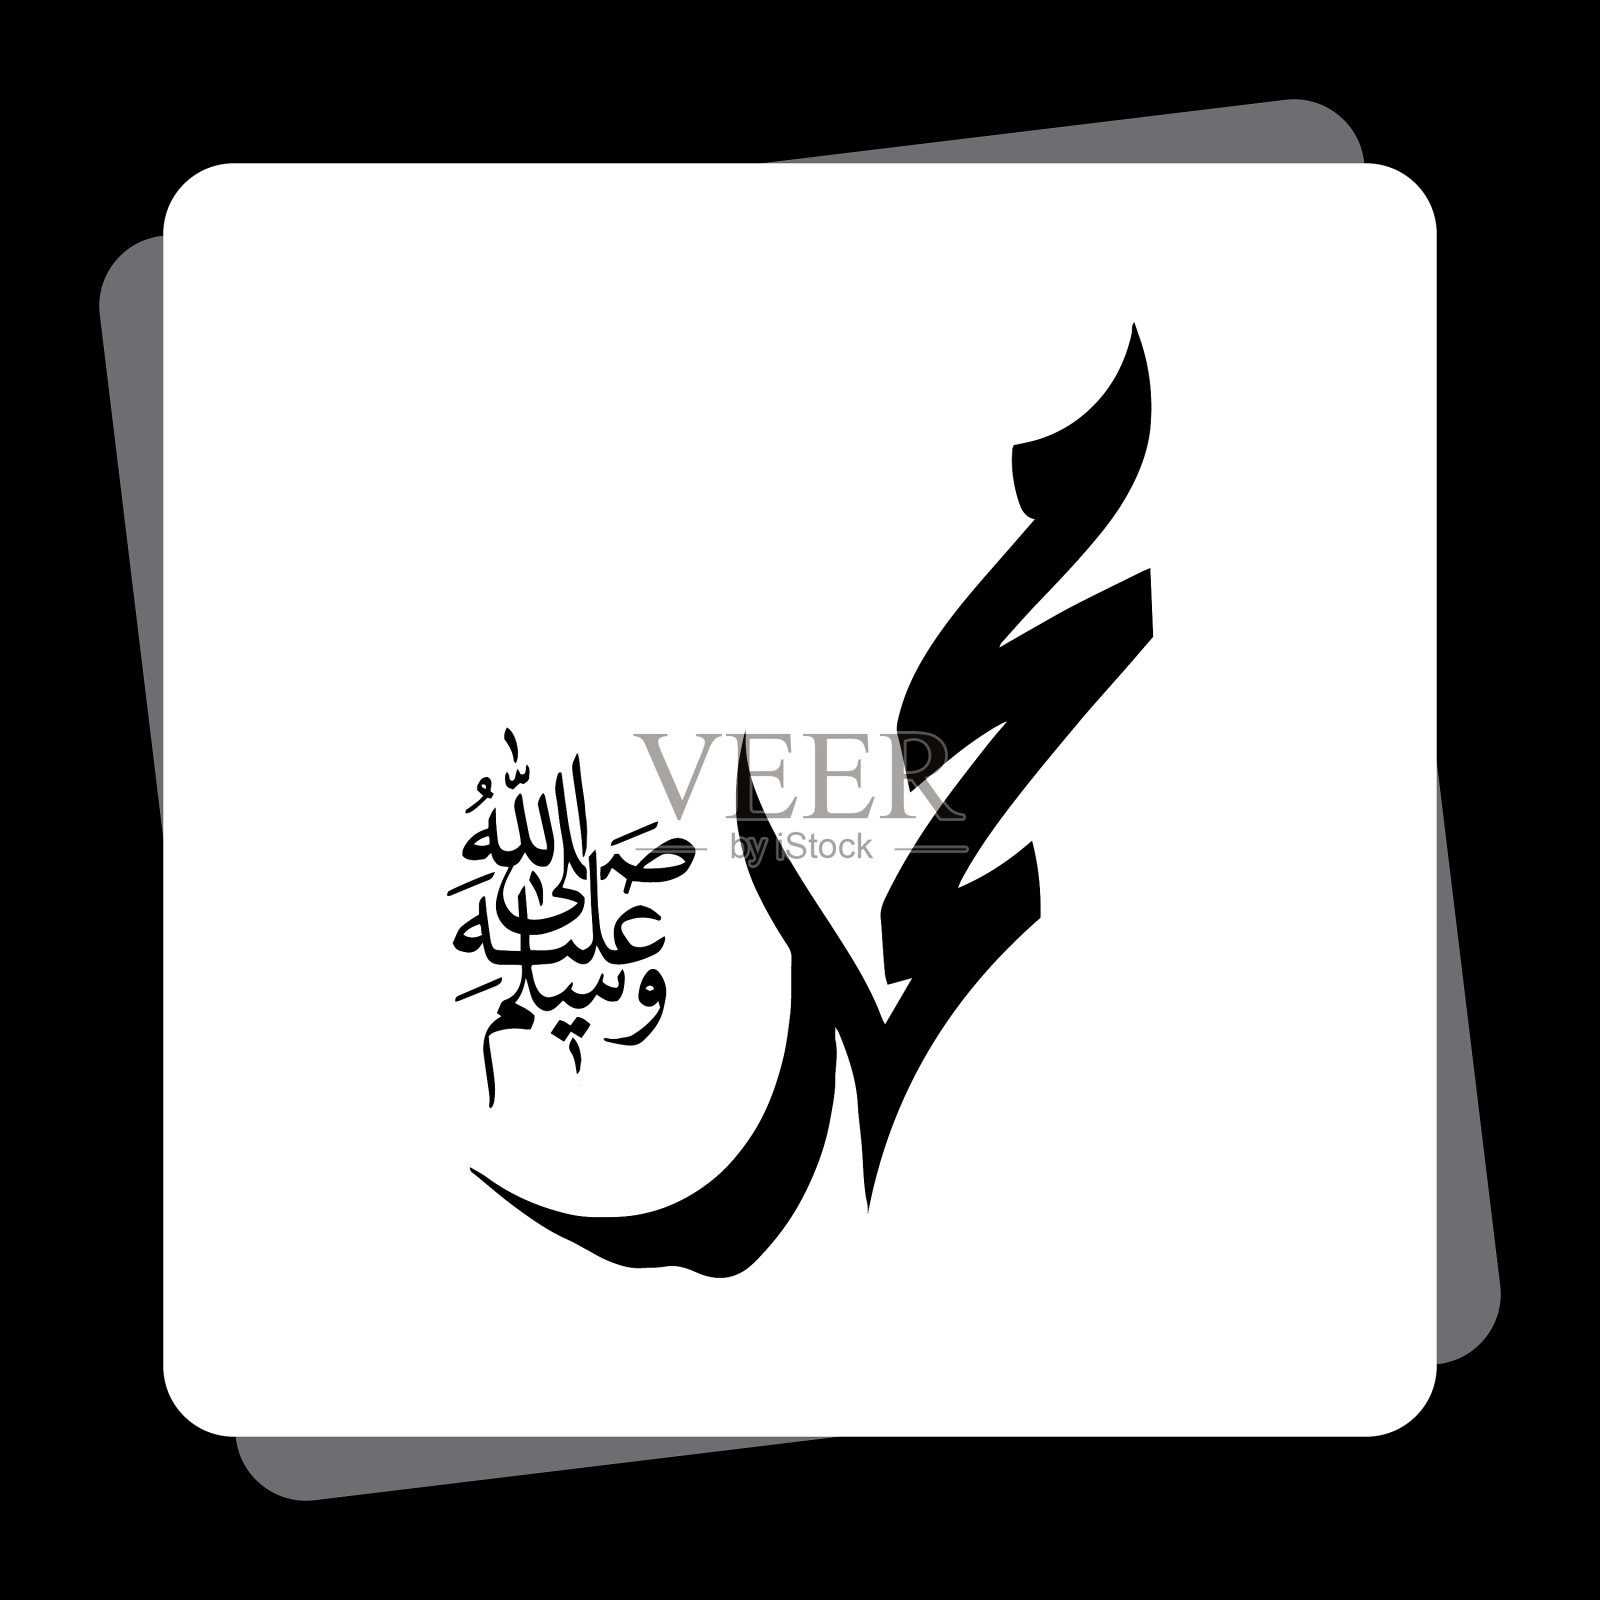 先知穆罕默德·阿莱希塞拉姆的金陵 图库摄影片. 图片 包括有 宗教, 历史记录, 麦加朝圣, 绿色, 朝圣 - 154257957